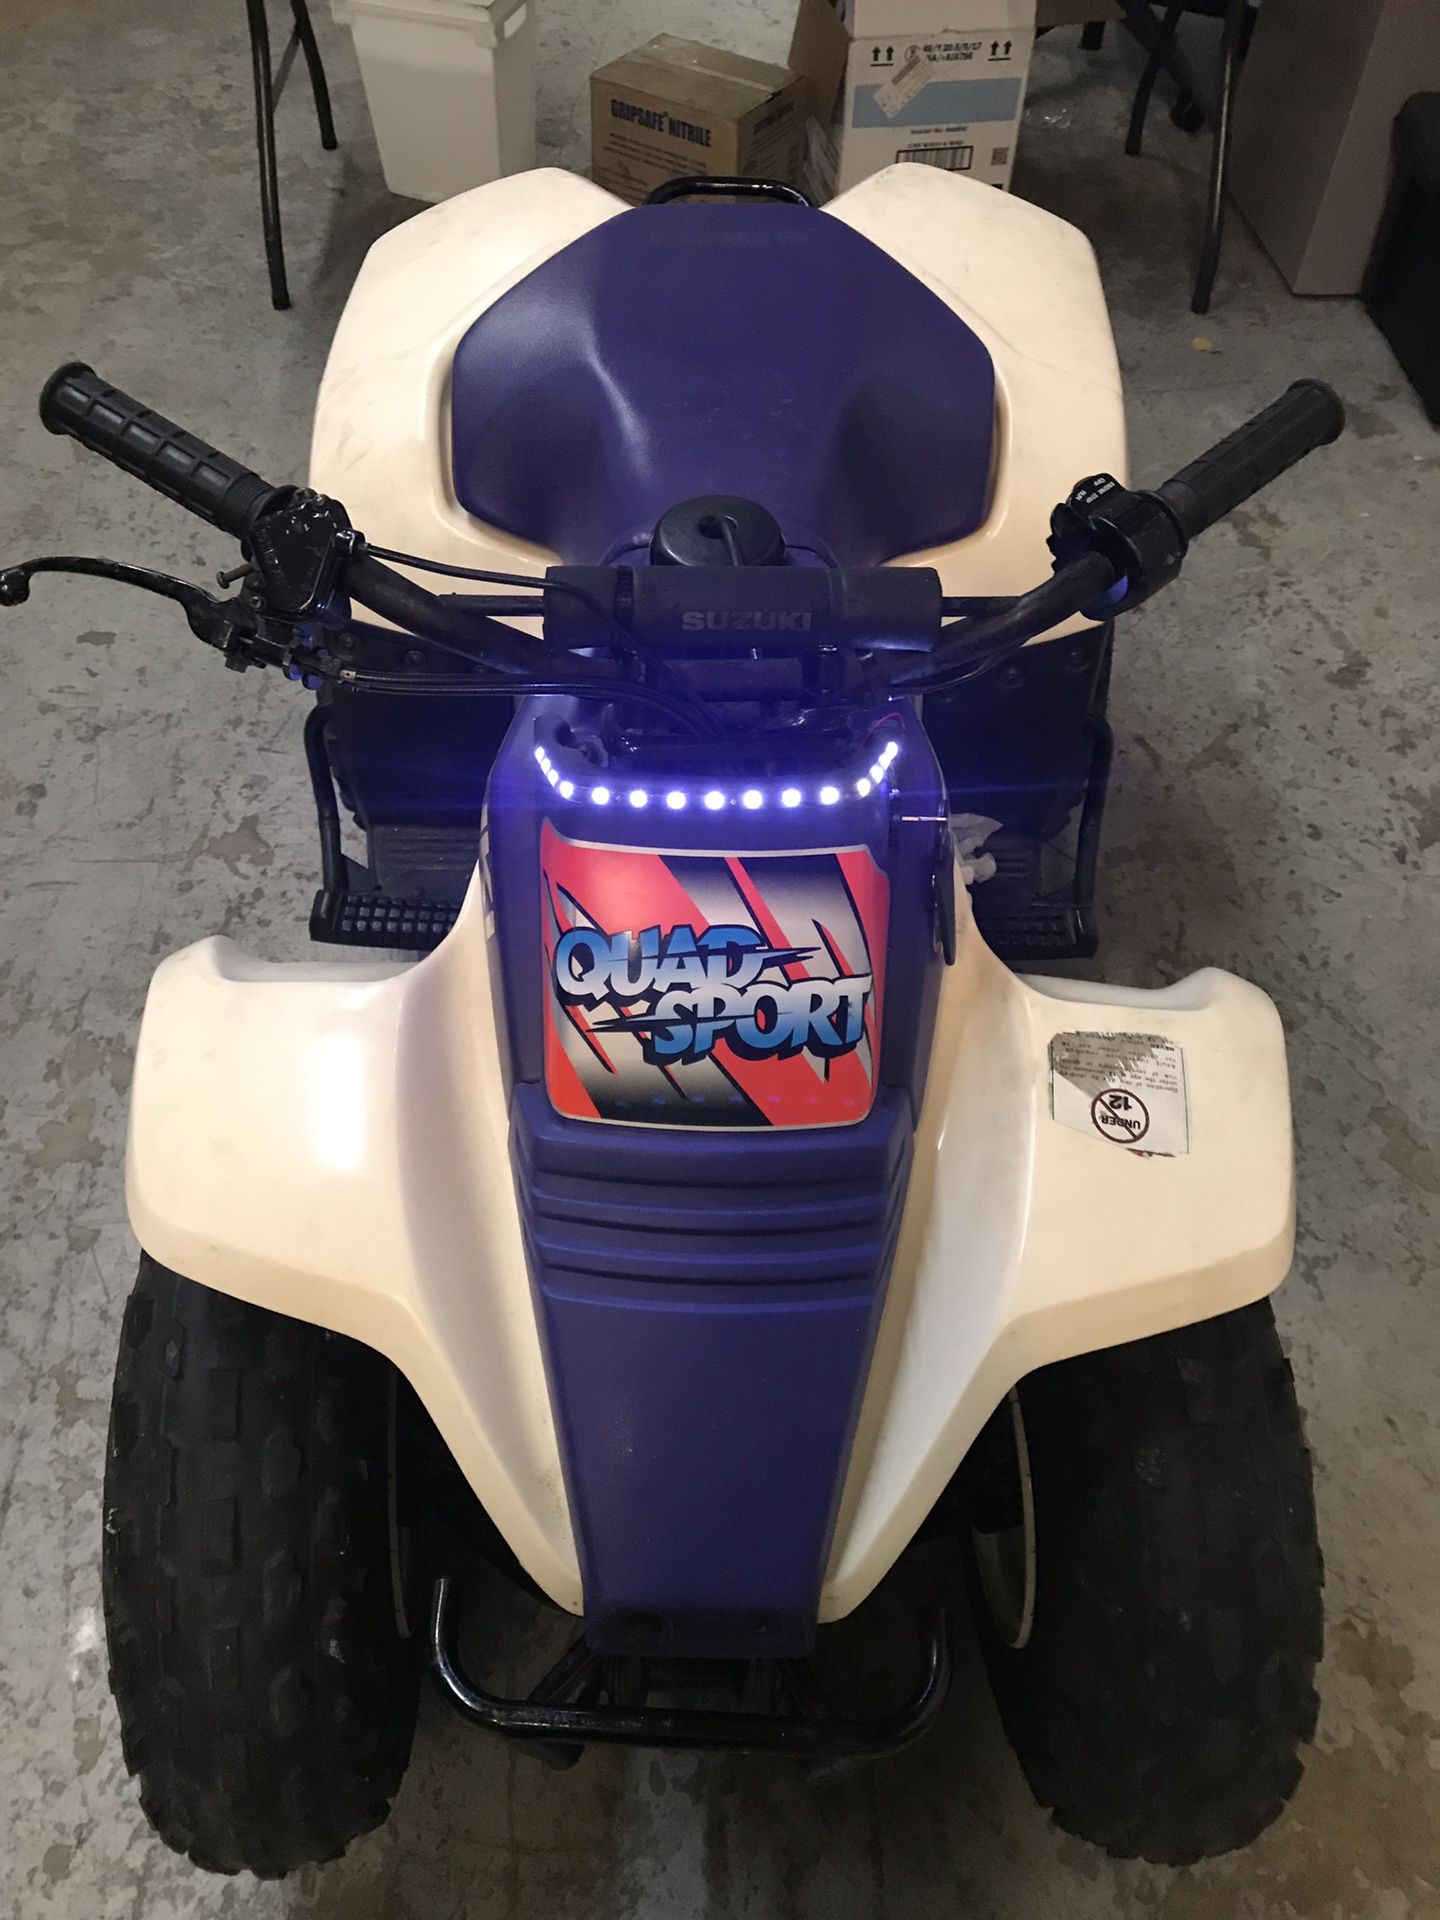 Suzuki quad sport 80cc